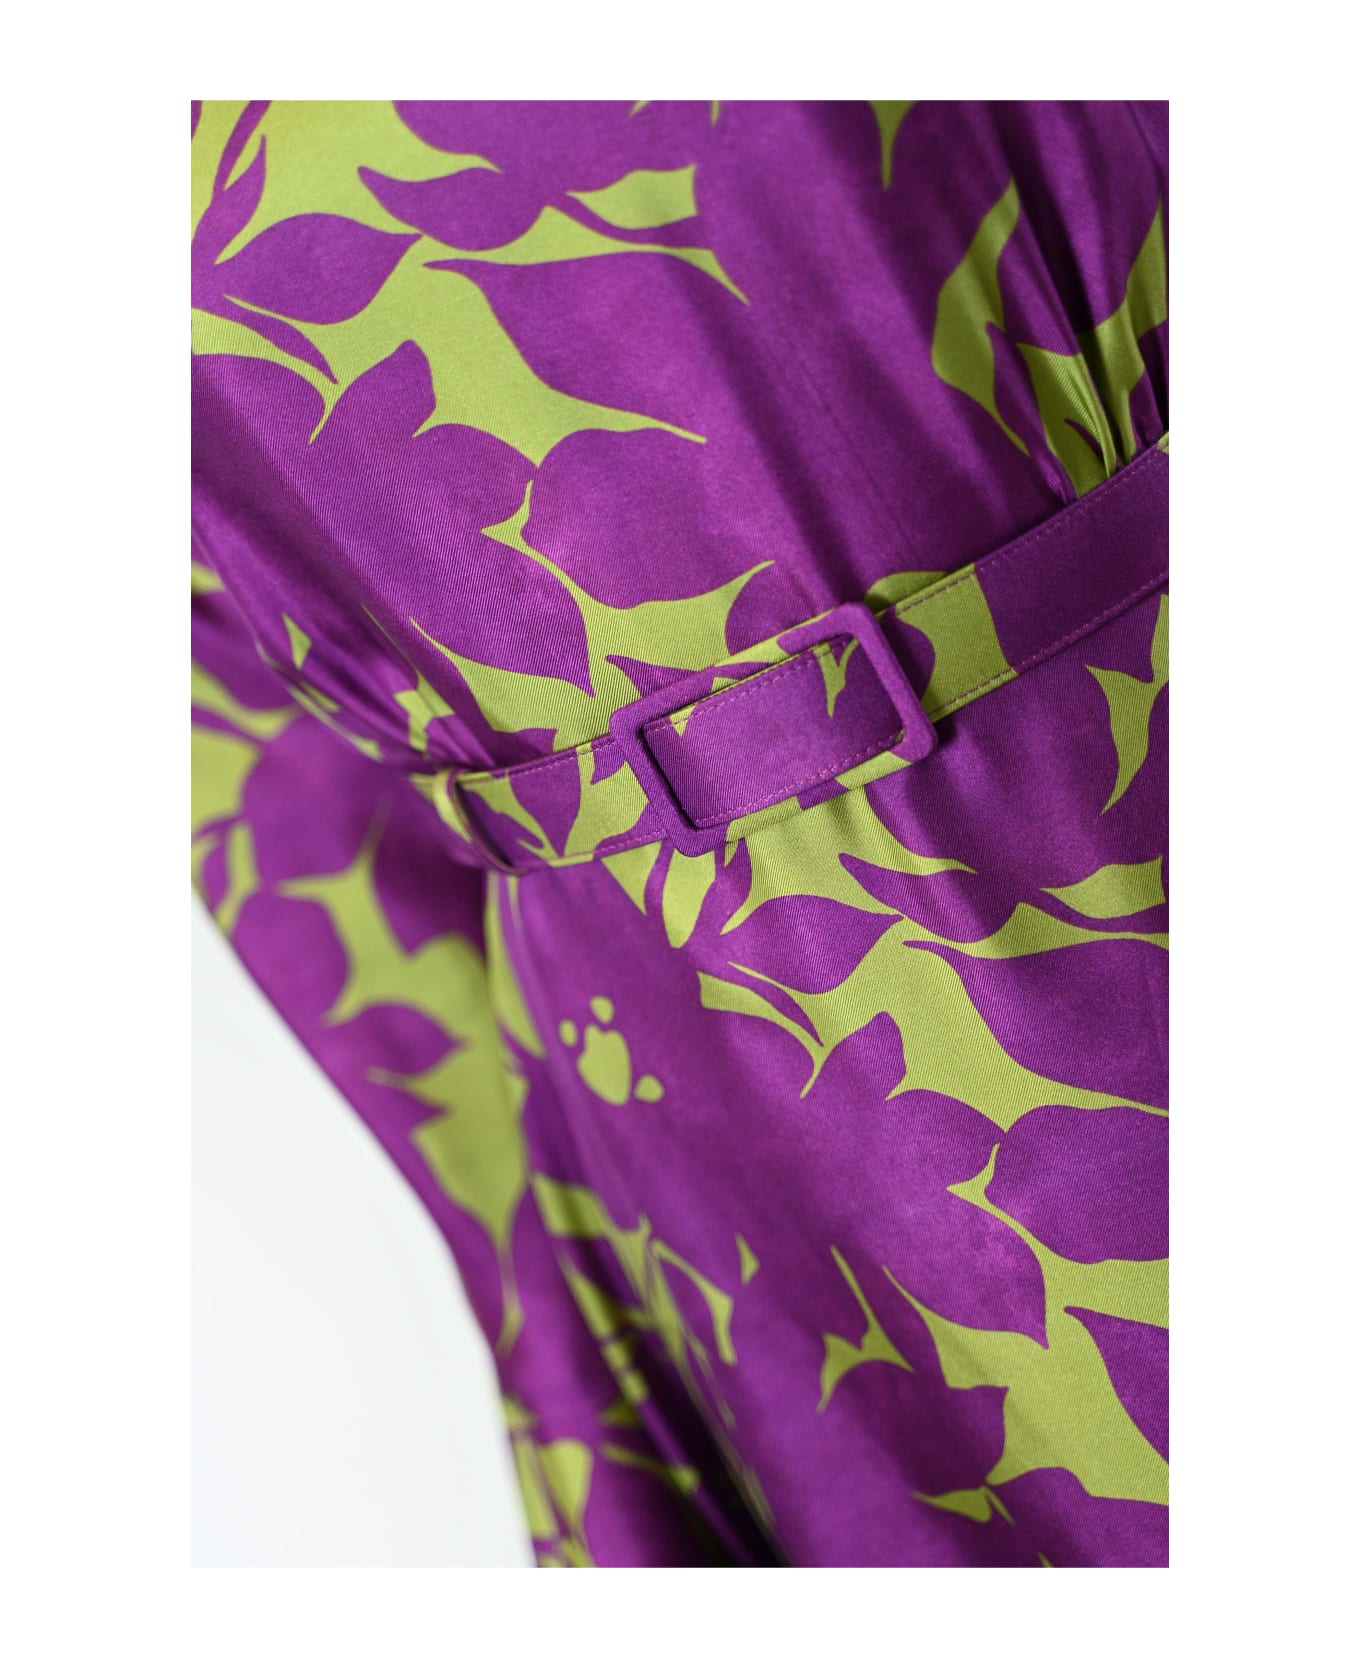 Max Mara Studio Printed Silk Dress - BOUGANVILLE